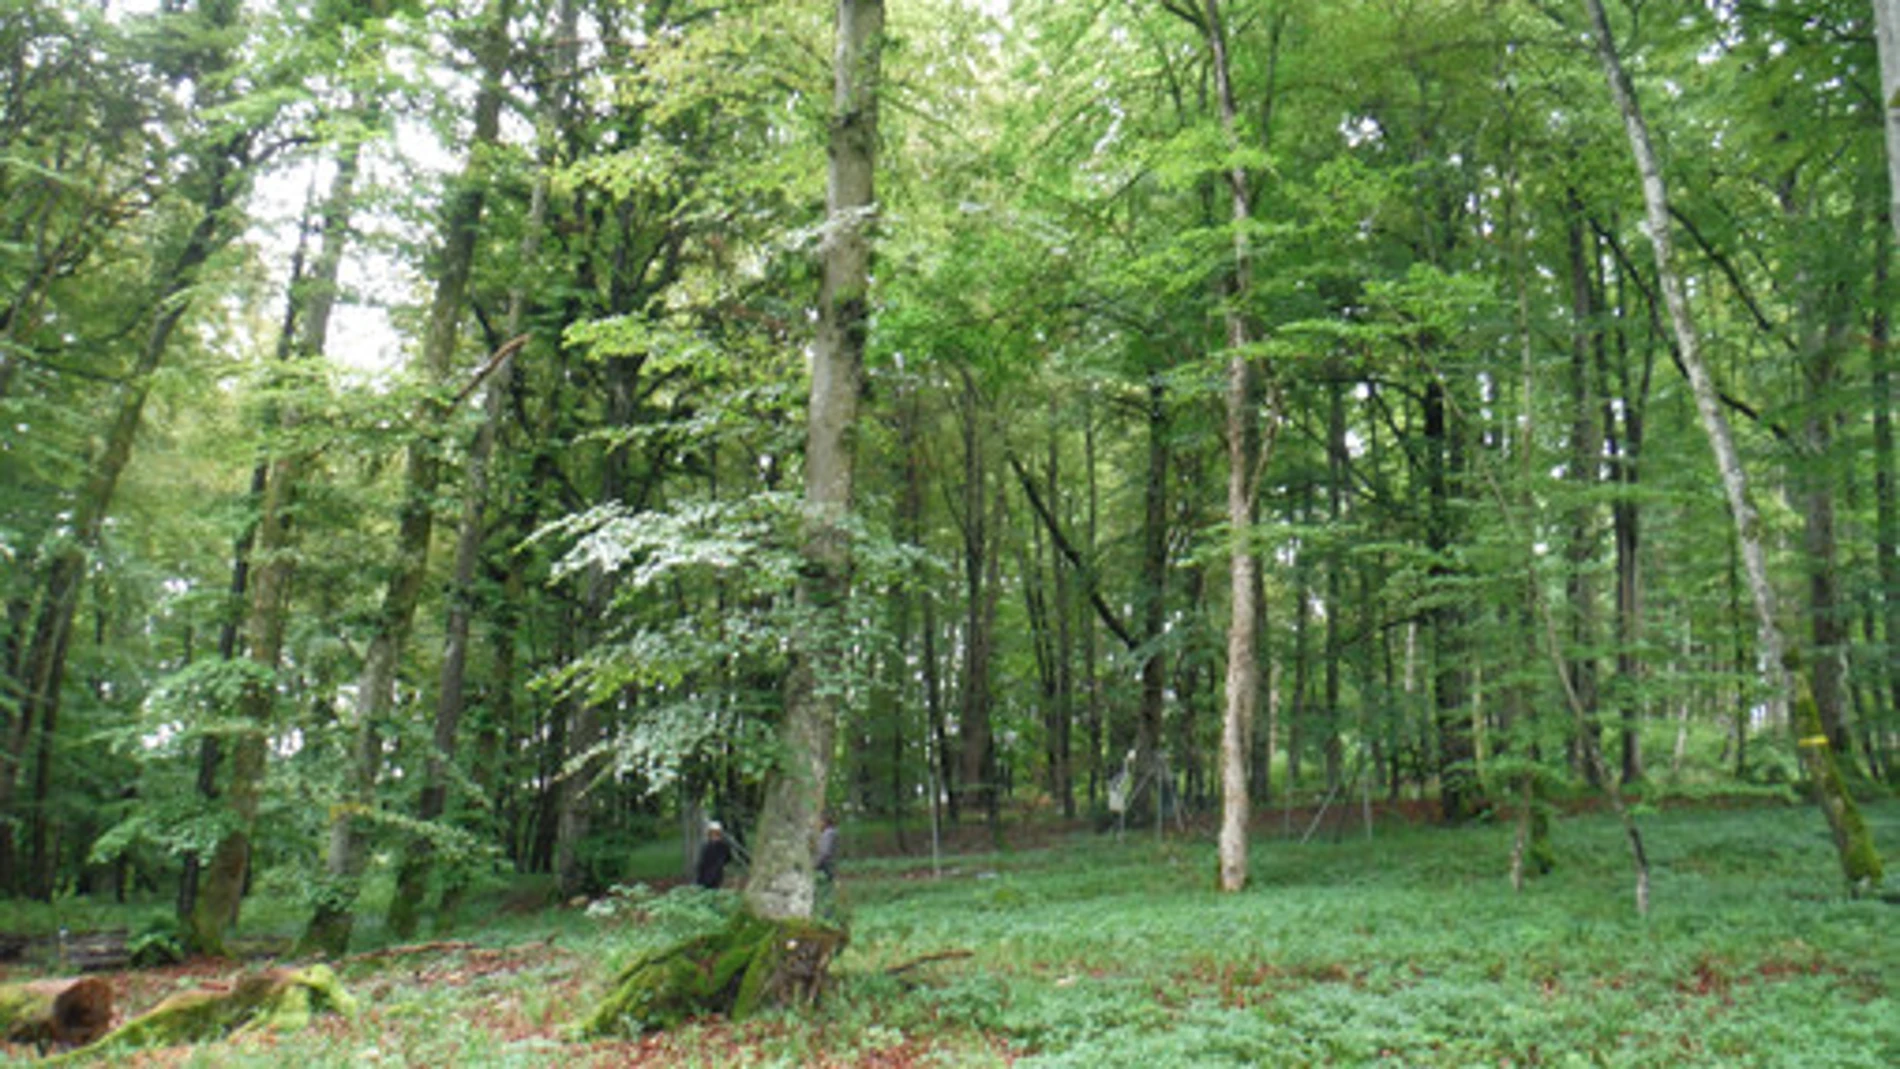 Imagen de archivo de un bosque